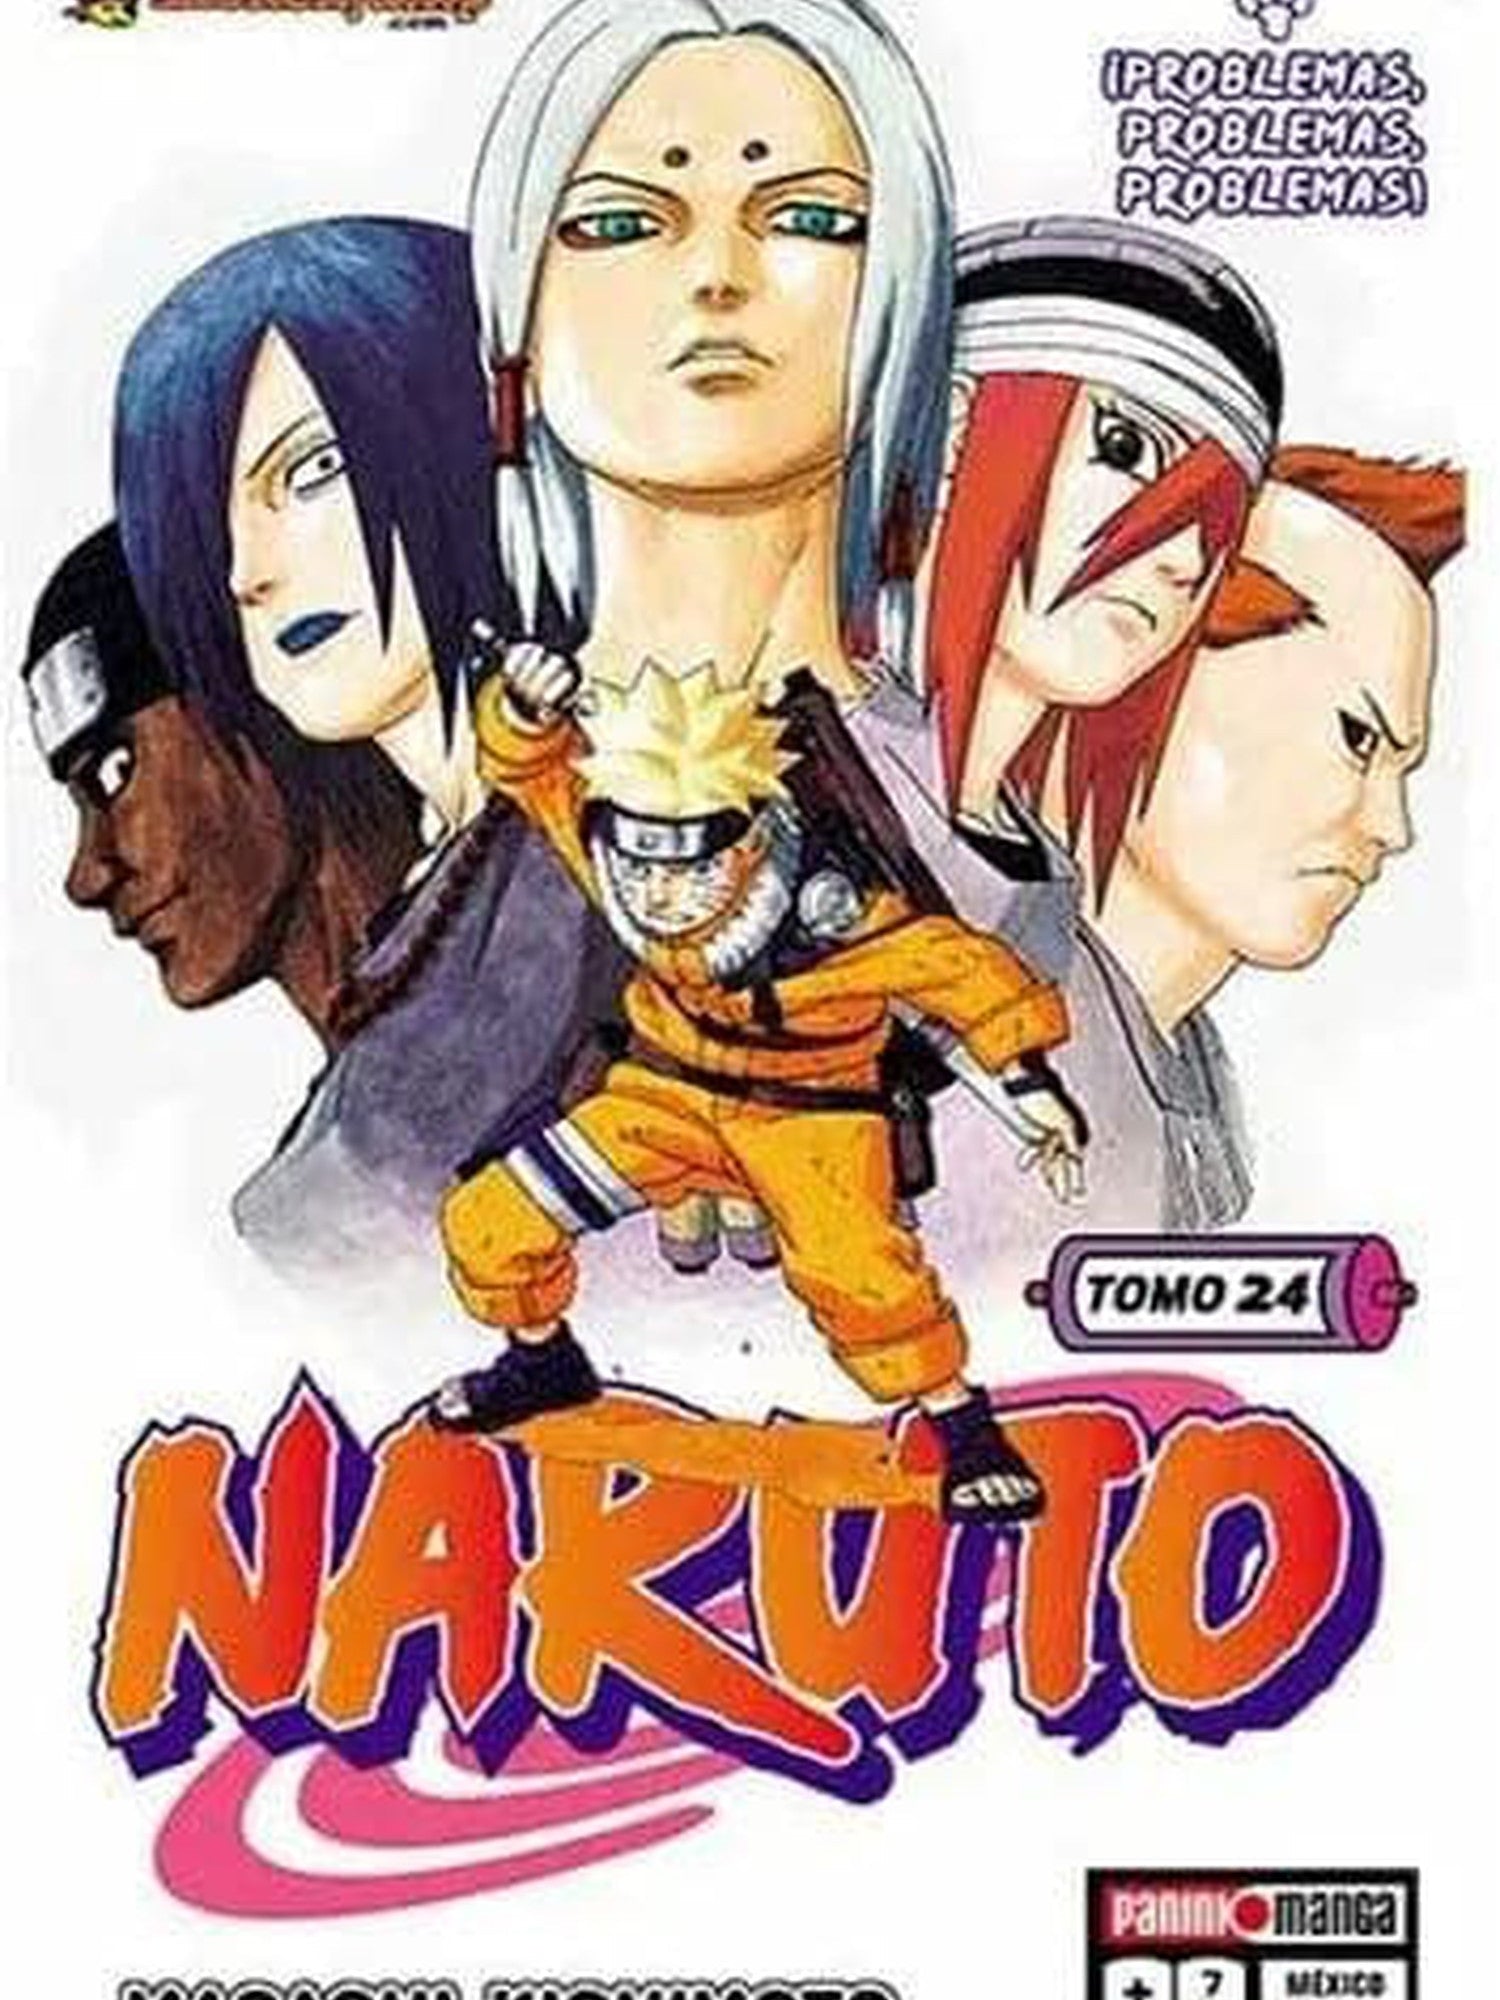 Naruto - #24